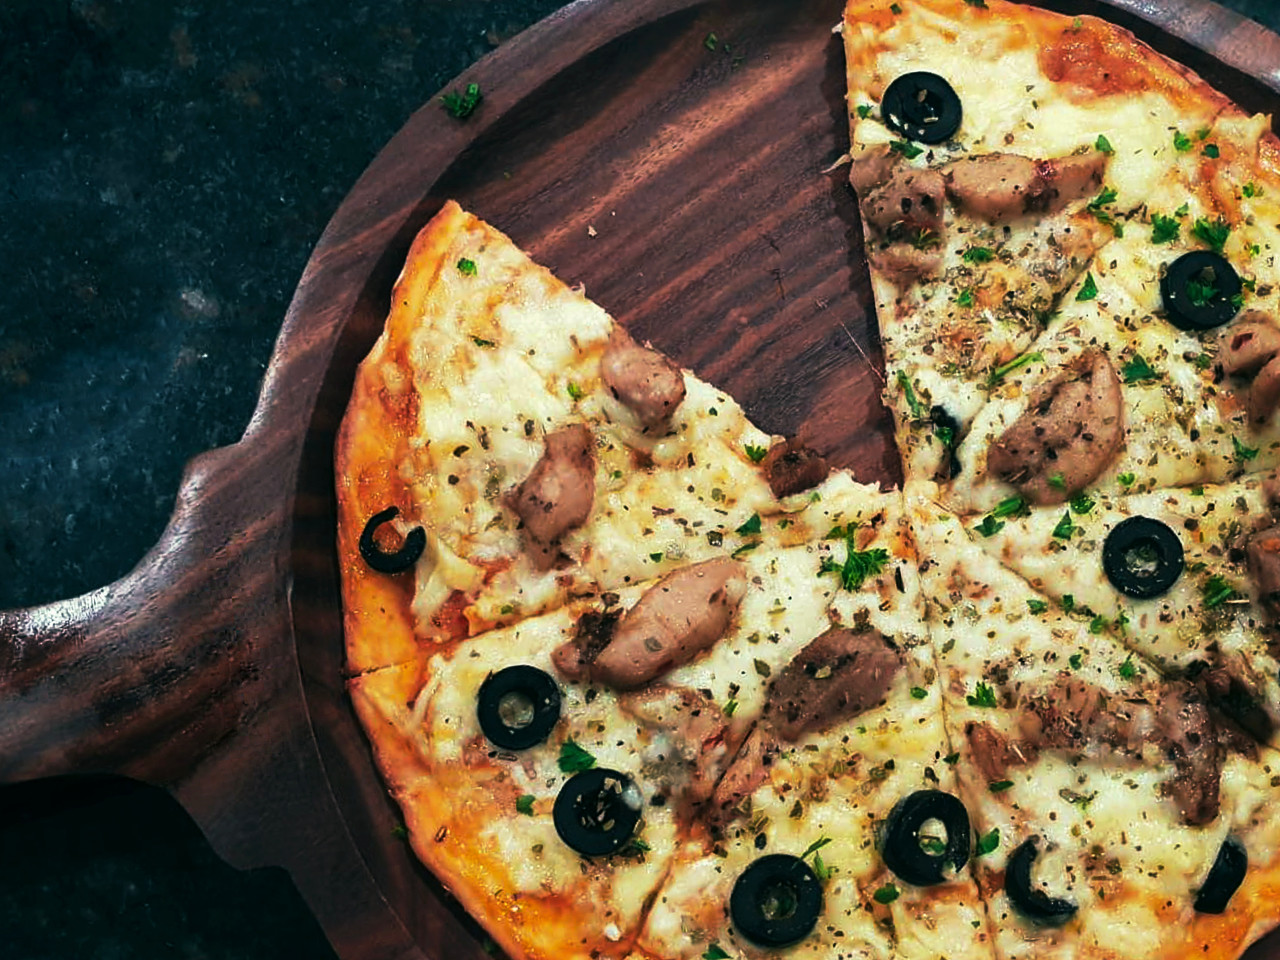 Pizza backen leicht gemacht: So wird es richtig lecker! Bäckerei Eckert